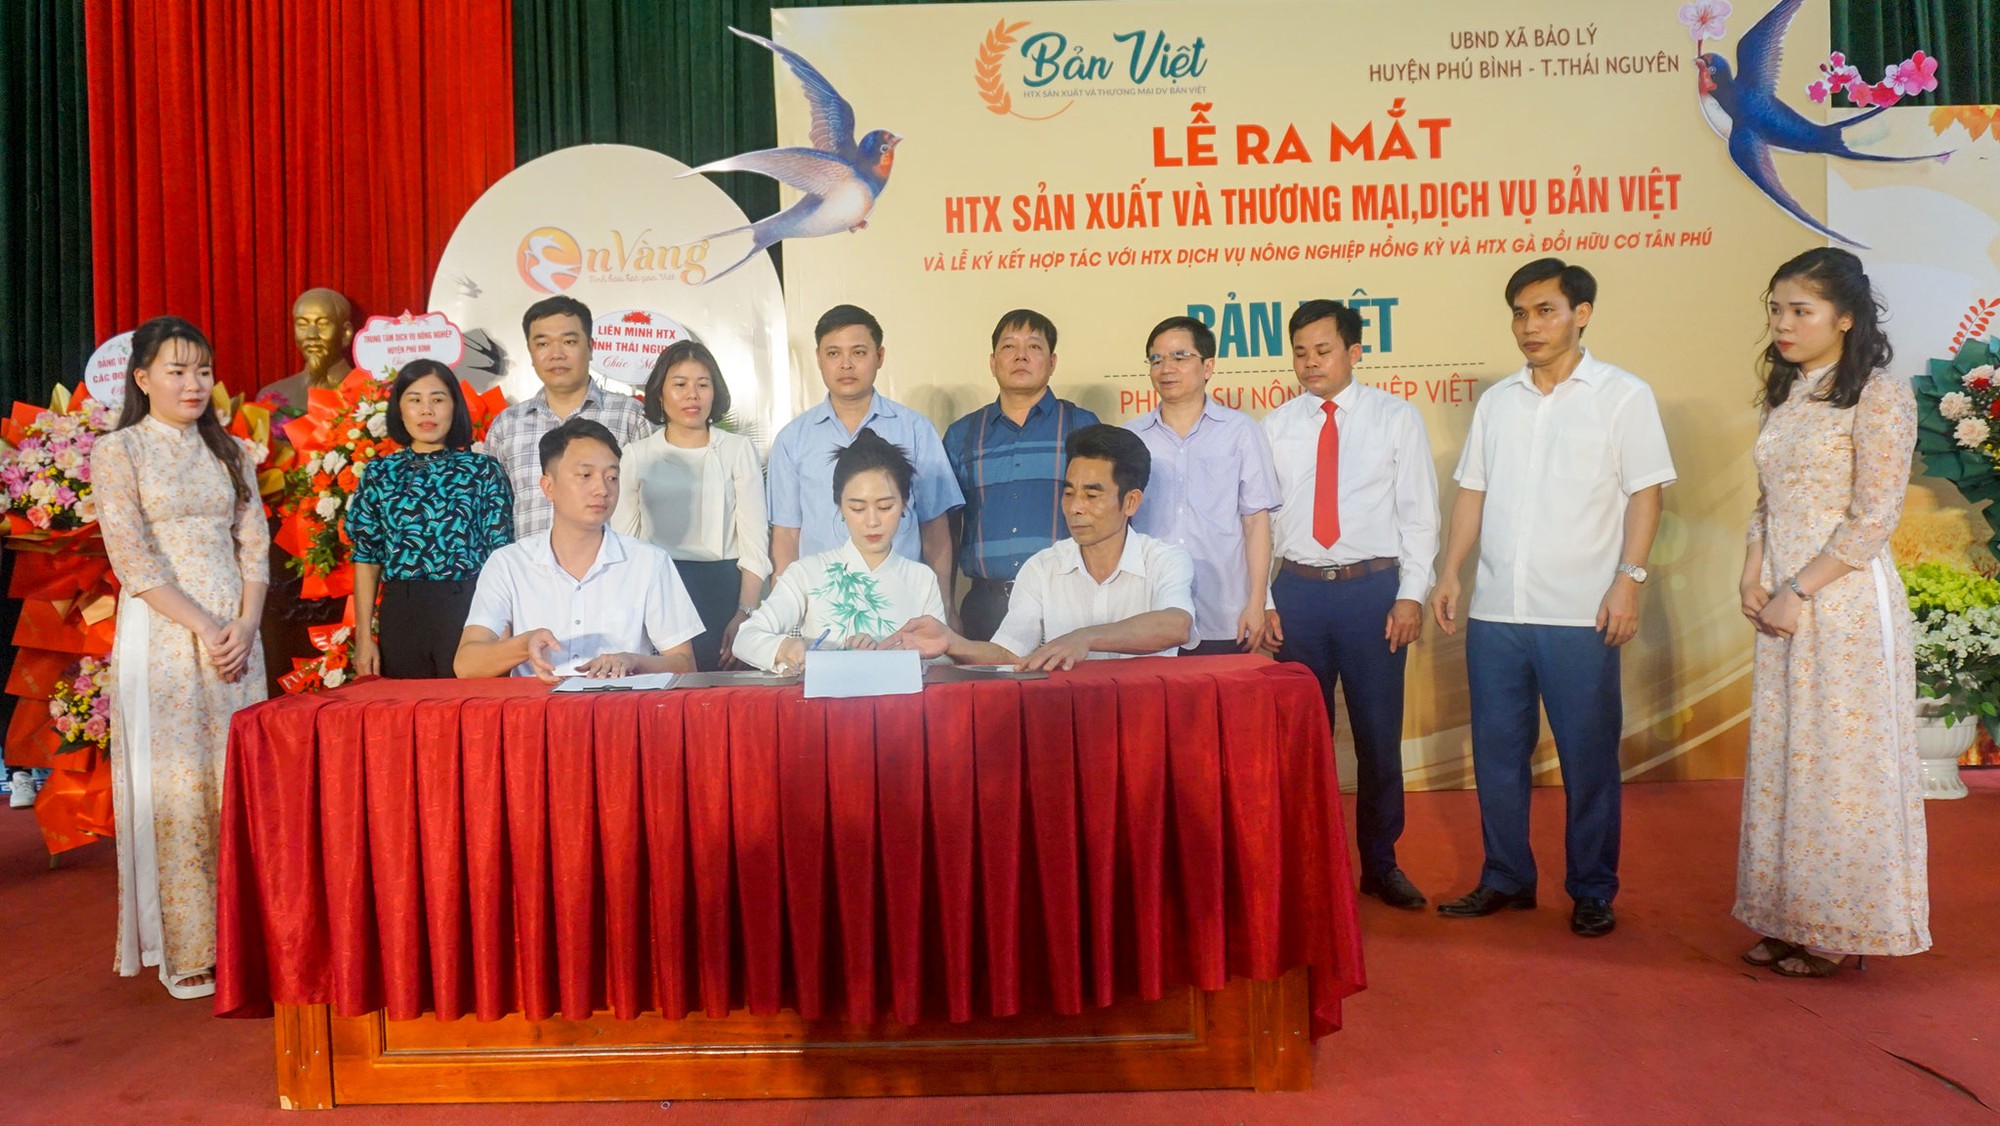 Ra mắt Hợp tác xã Sản xuất và Thương mại dịch vụ Bản Việt tại huyện Phú Bình, tỉnh Thái Nguyên - Ảnh 2.